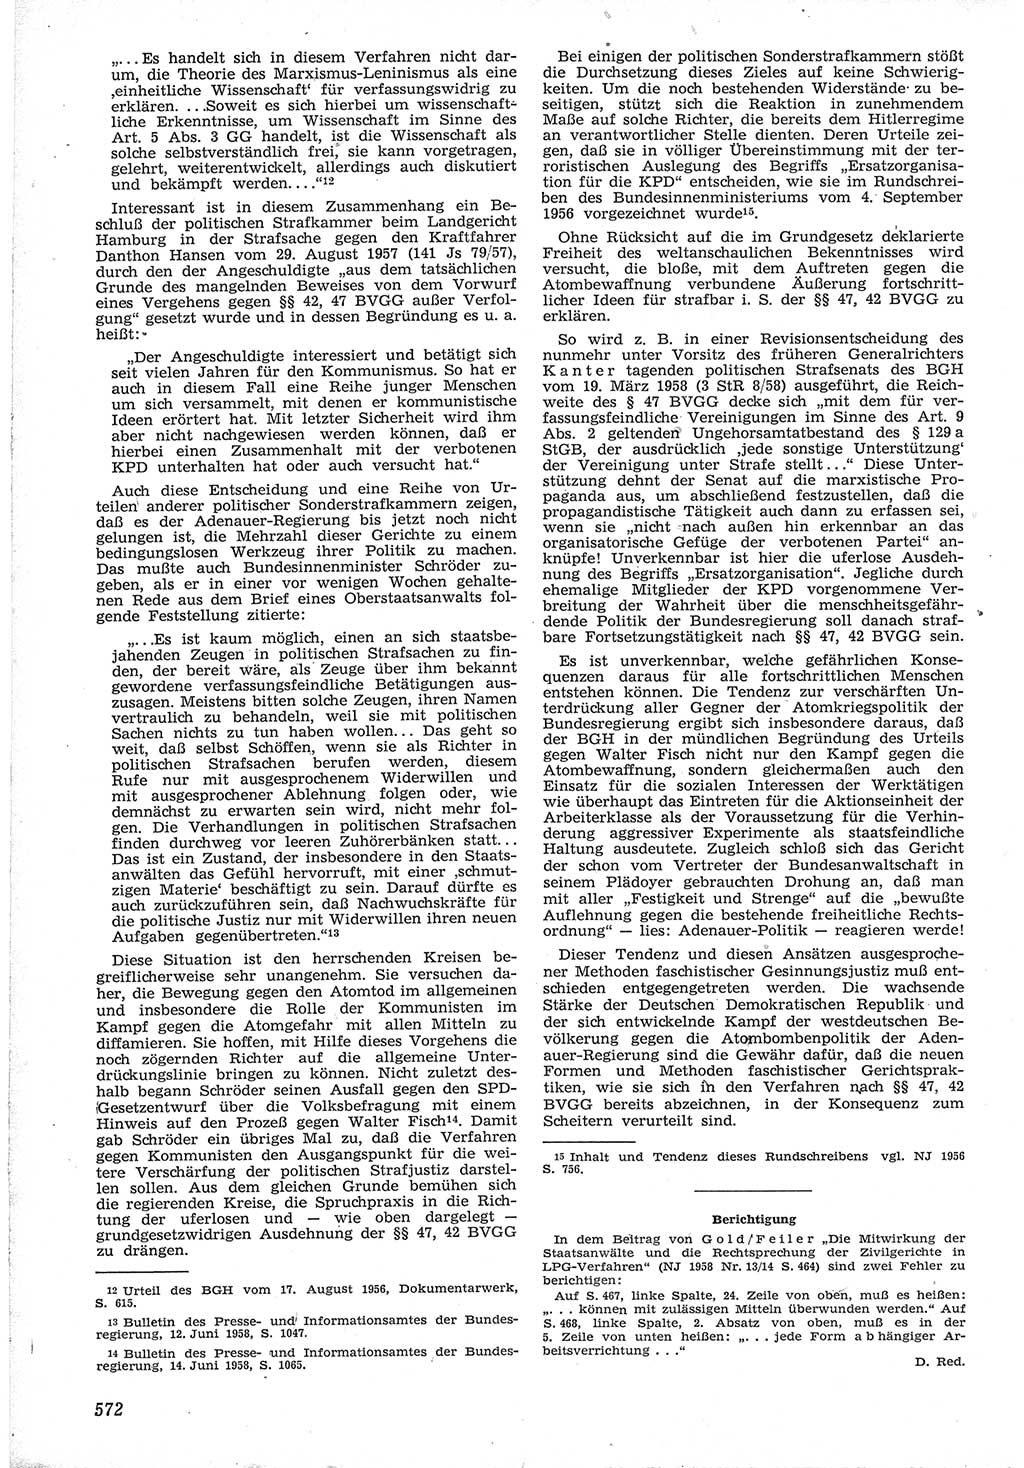 Neue Justiz (NJ), Zeitschrift für Recht und Rechtswissenschaft [Deutsche Demokratische Republik (DDR)], 12. Jahrgang 1958, Seite 572 (NJ DDR 1958, S. 572)